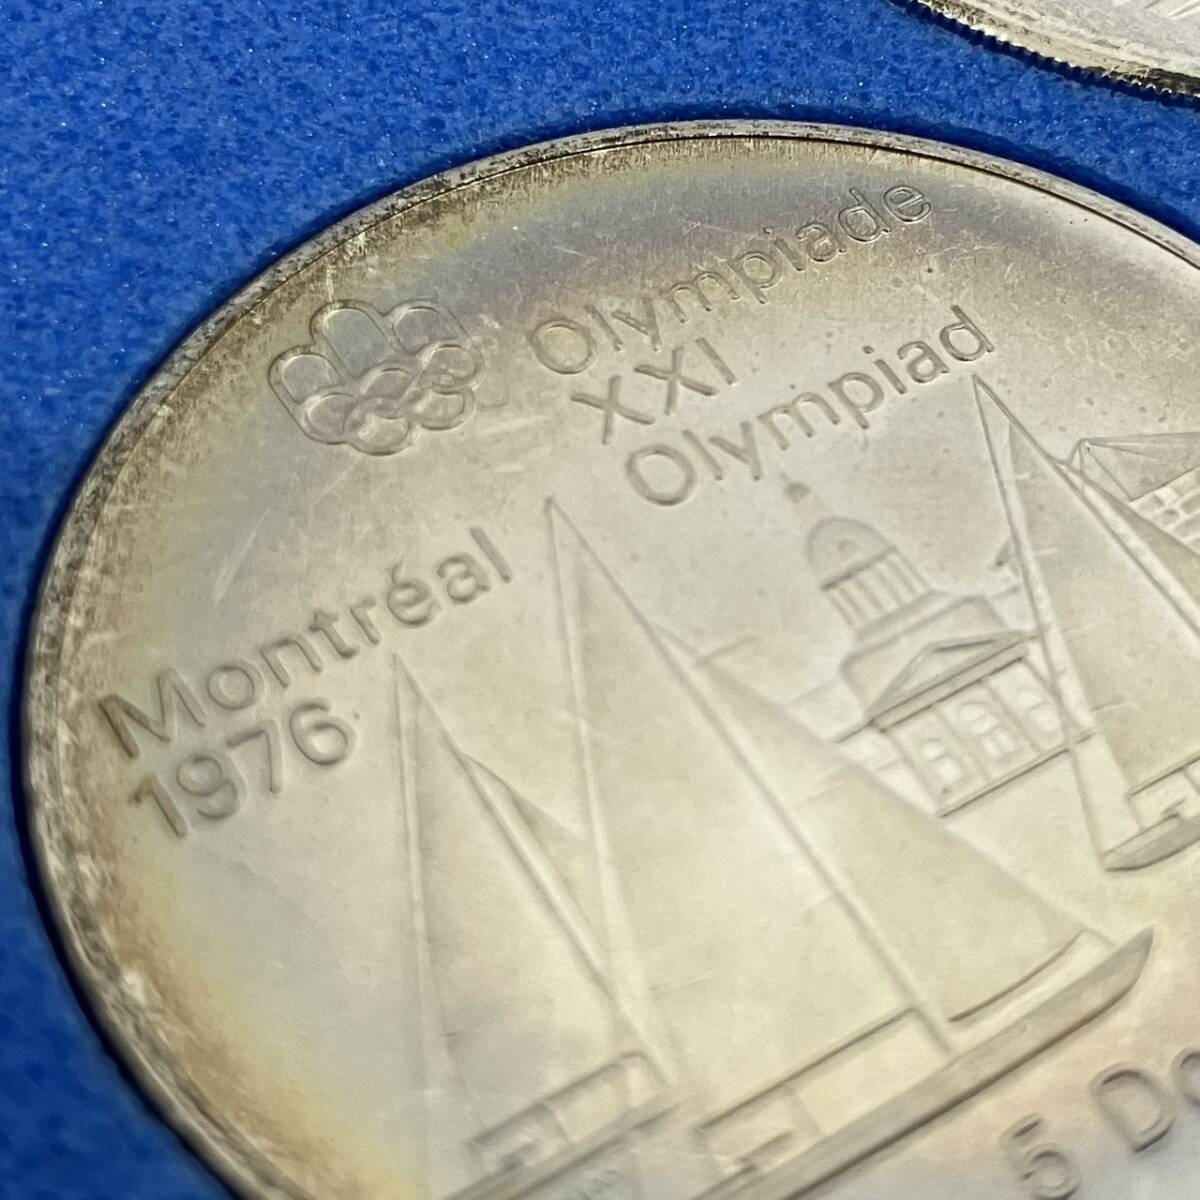 [A] no. 21 раз Olympic montoli все собрание памятная серебряная монета 4 шт. комплект 1976 год деньги collector б/у [448]